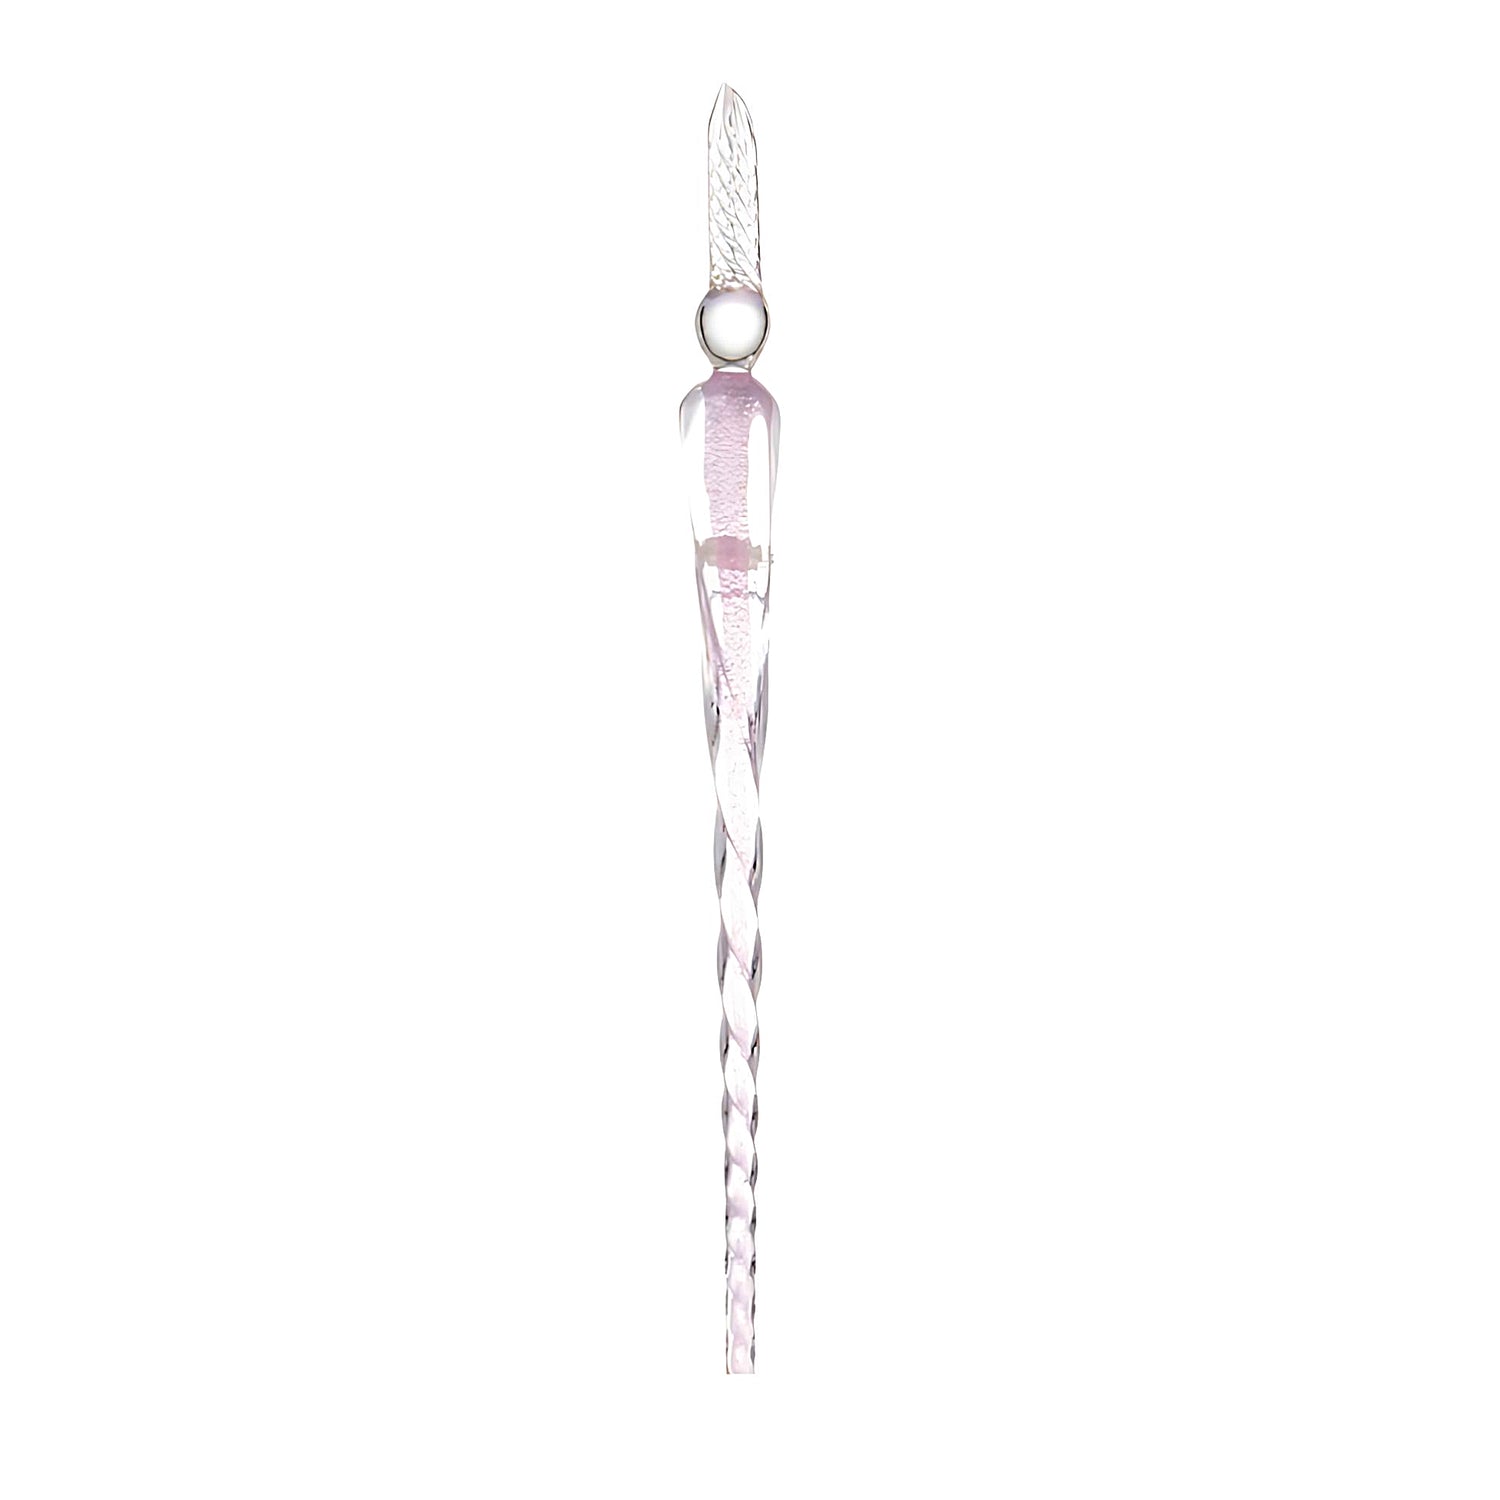 a pink glass dip pen